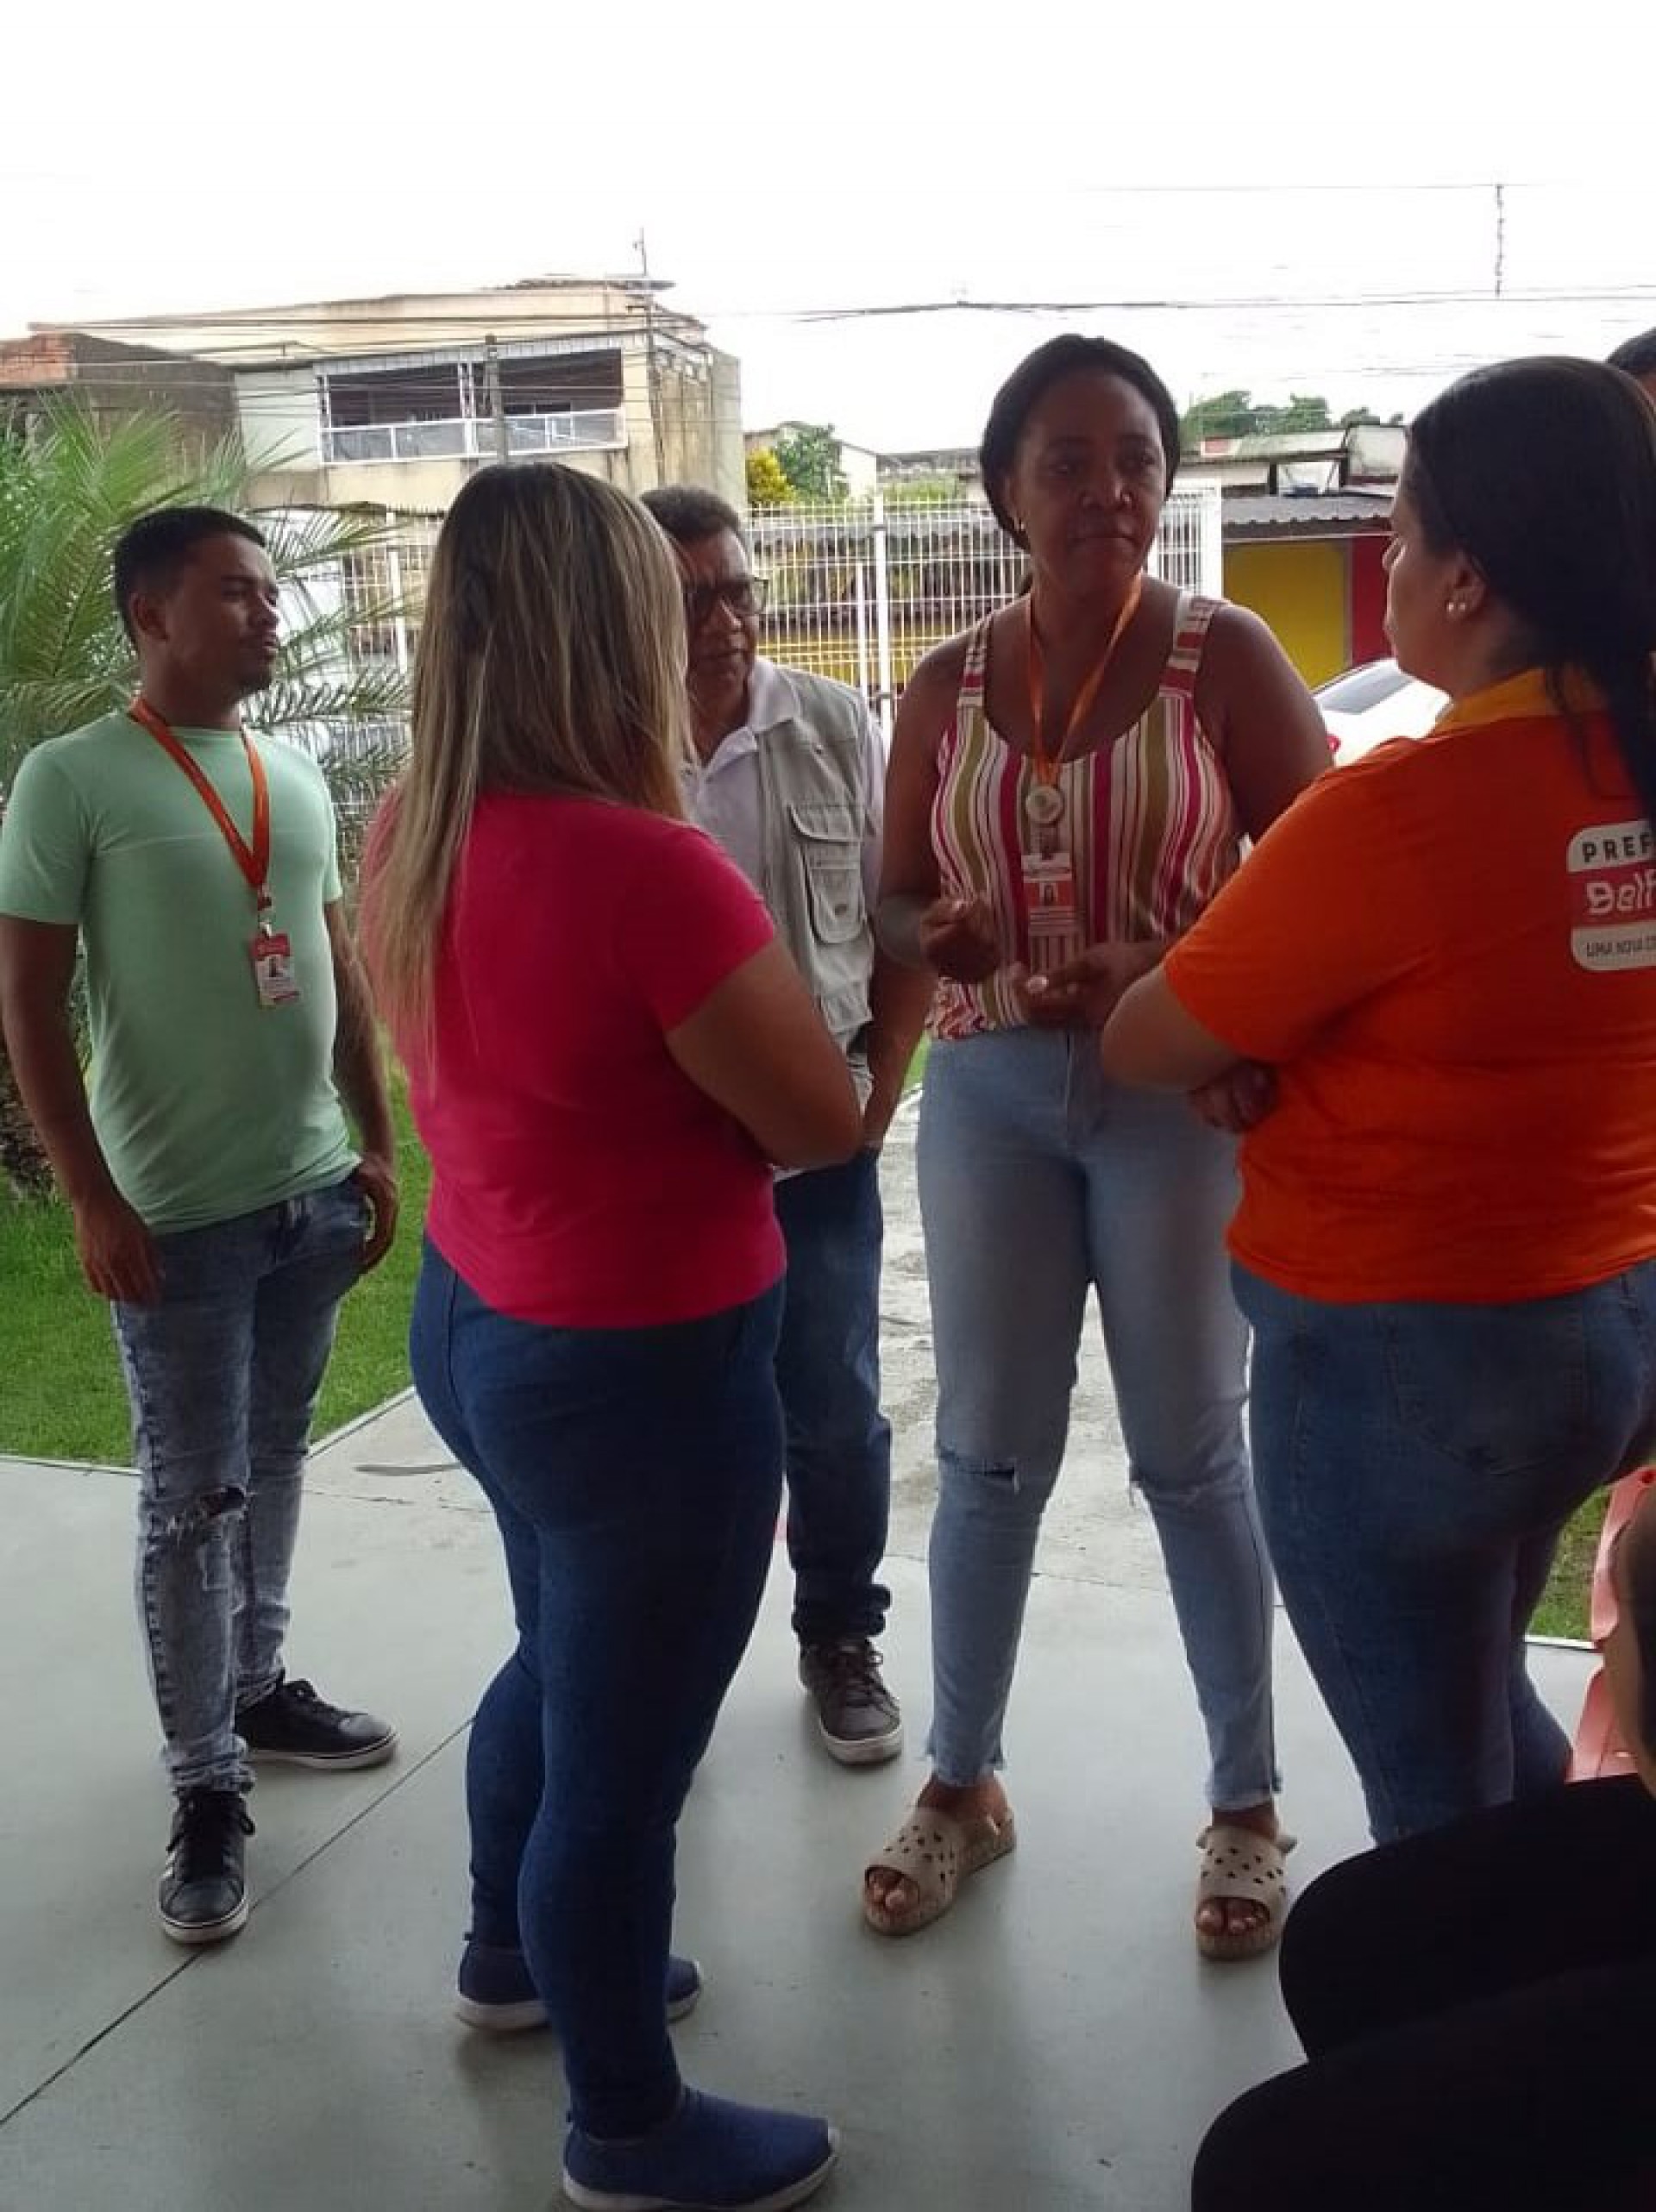 A equipe traçou metas para regularizar a vacinação contra o sarampo nos bairros - Divulgação